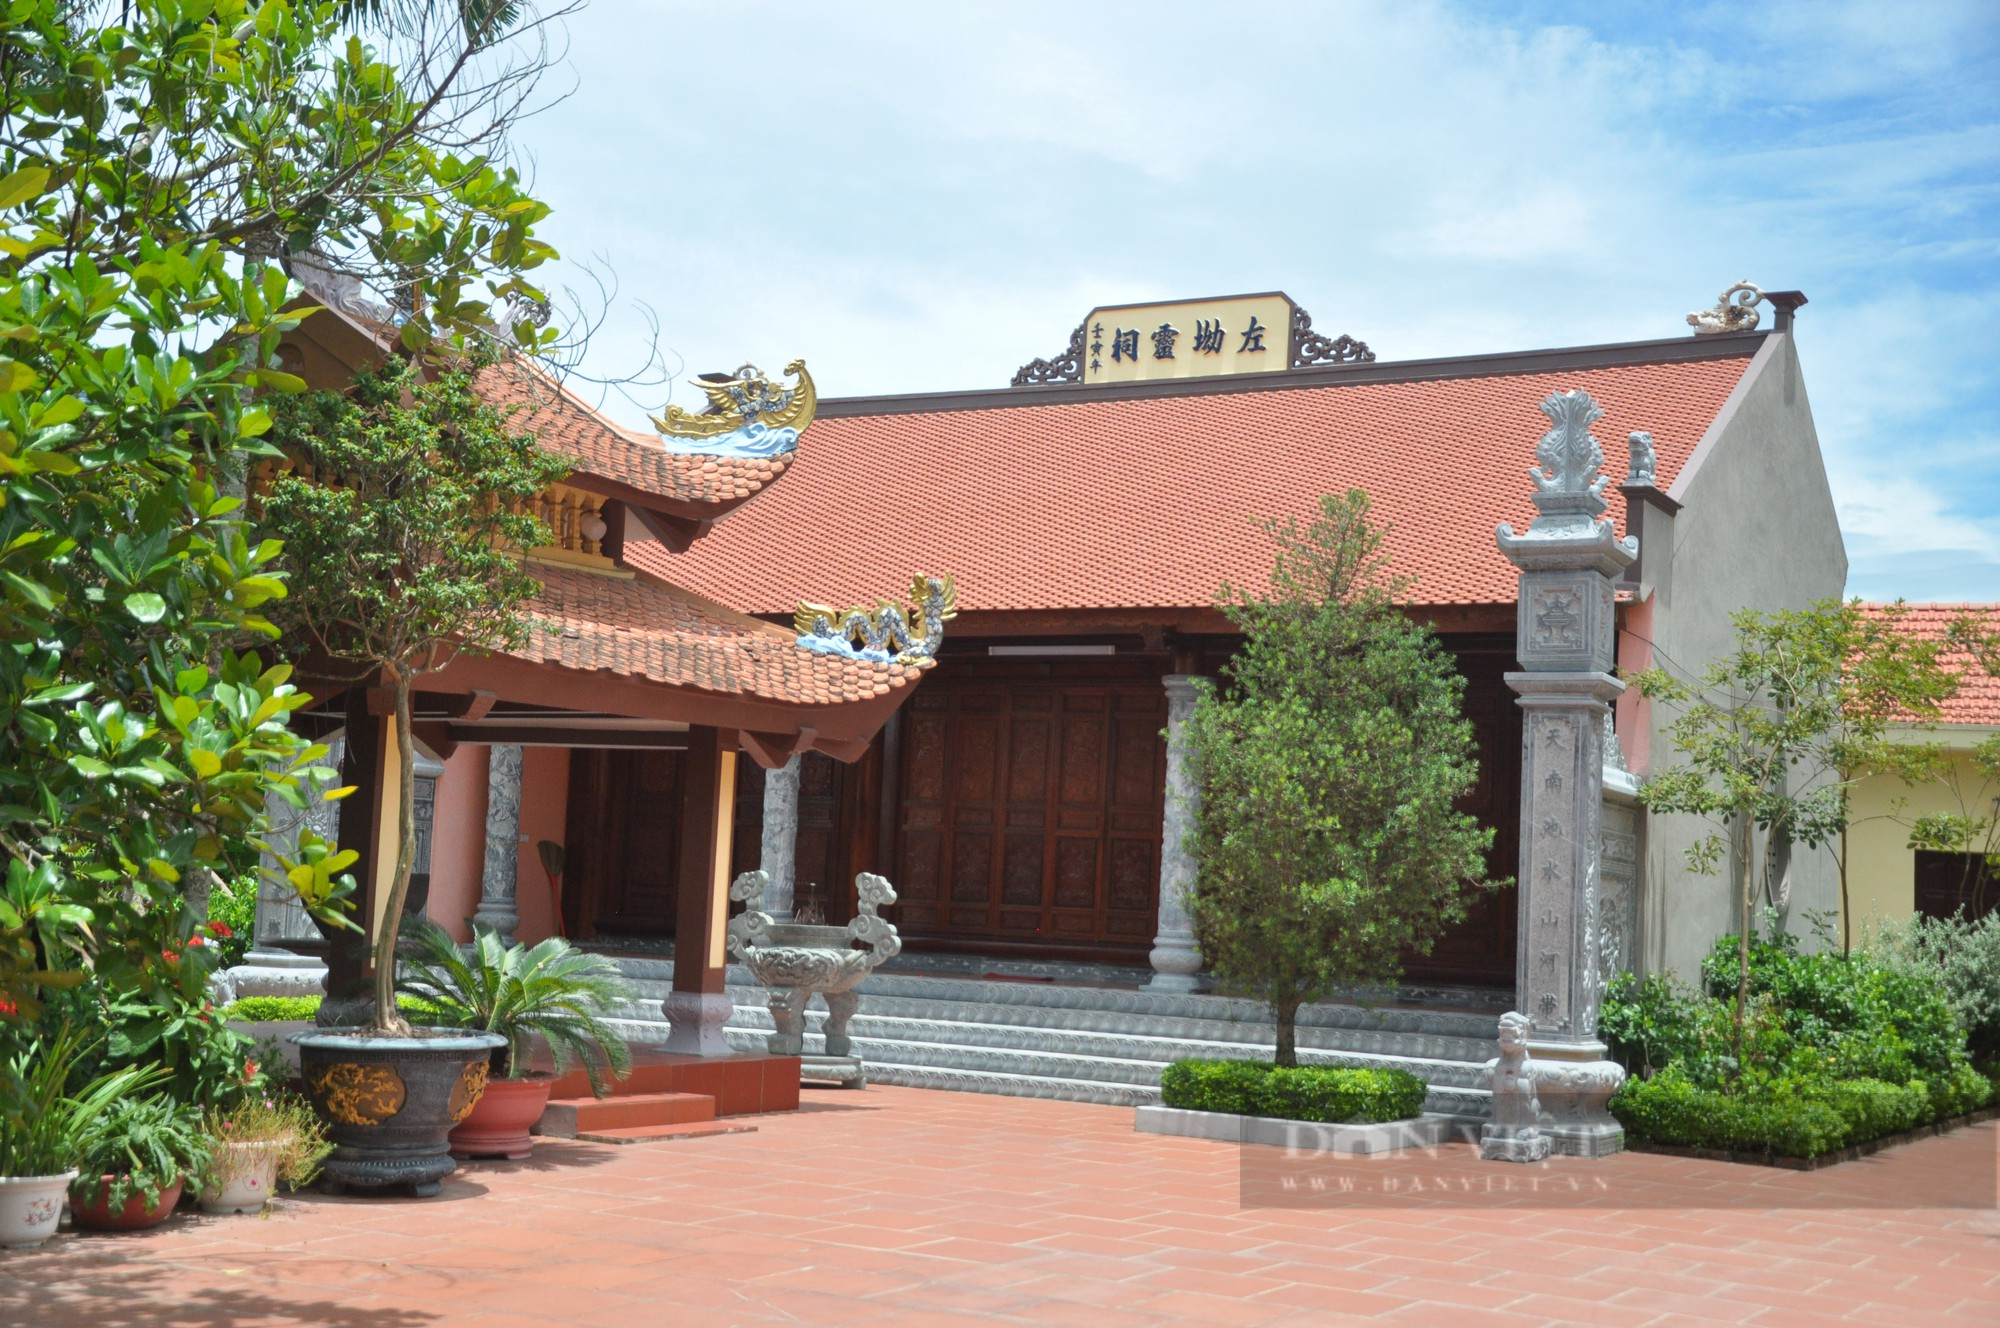 Làng cổ ở Hưng Yên từng được thánh địa lý Tả Ao trấn yểm phát về khoa cử, buôn bán giàu có - Ảnh 3.